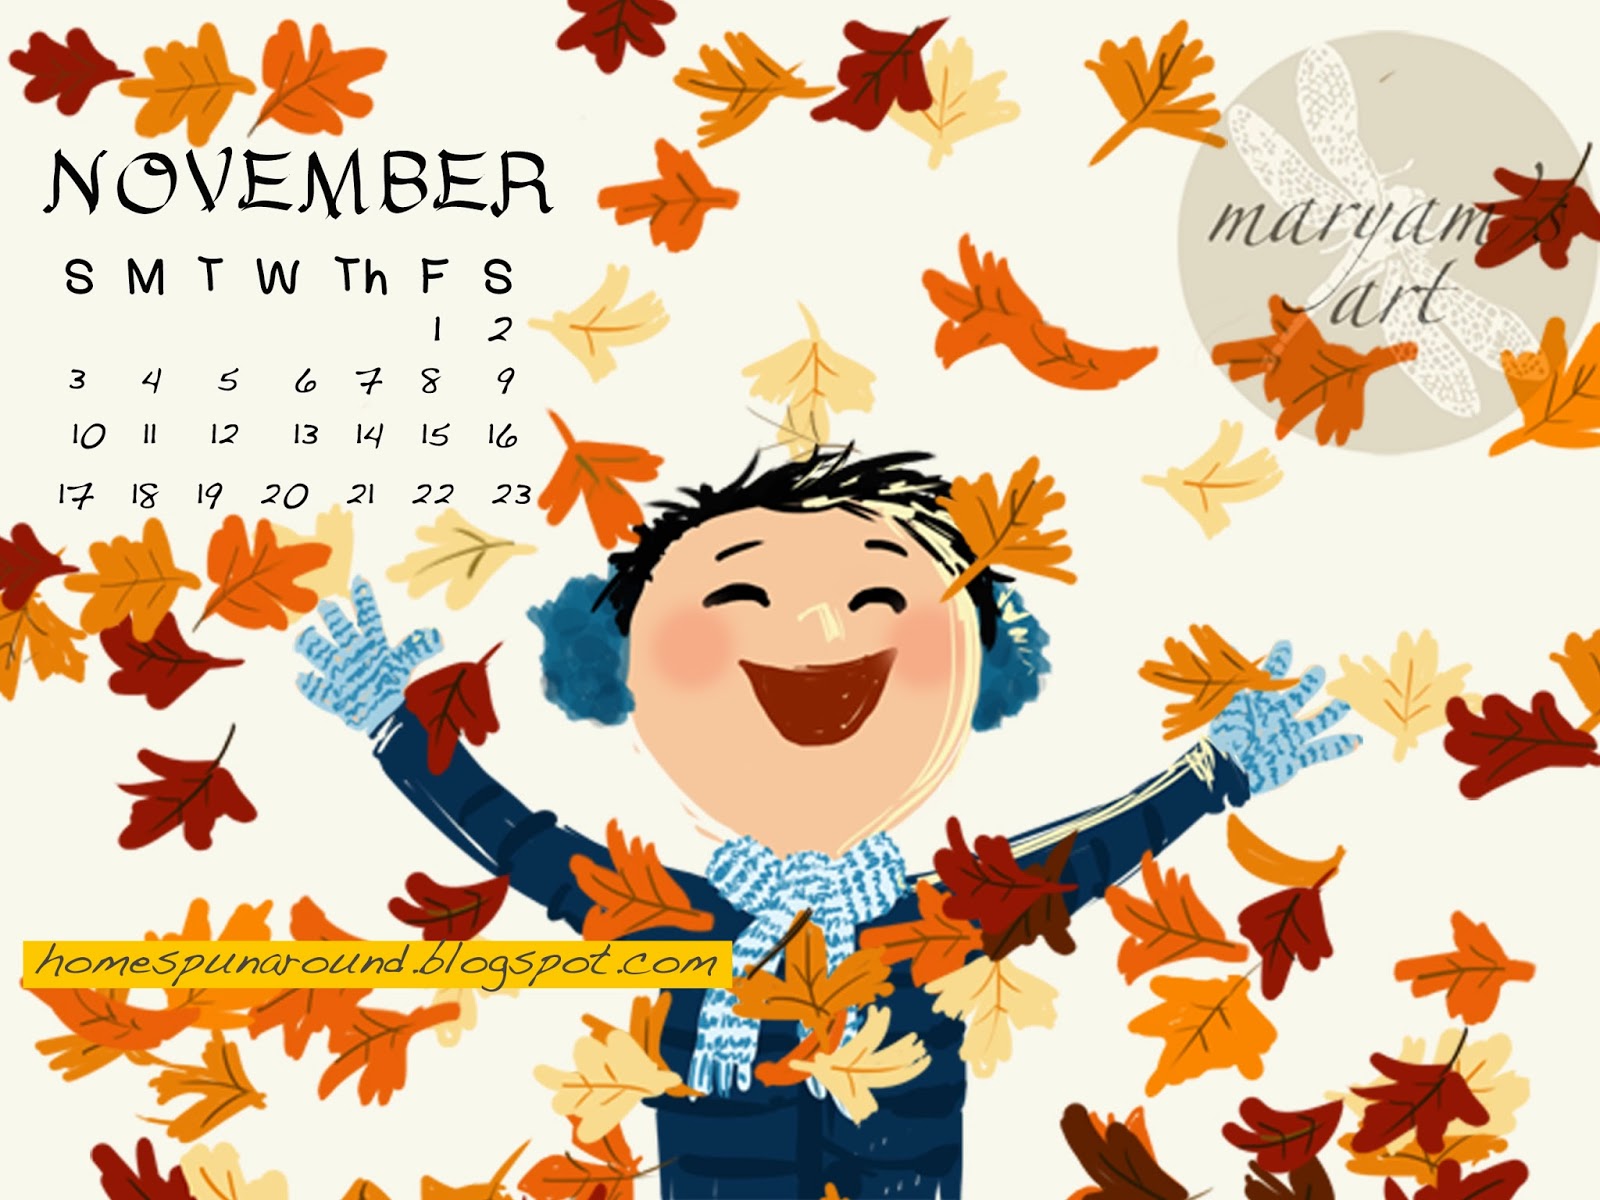 HomeSpunAround Cute November Calendar for your desktop!